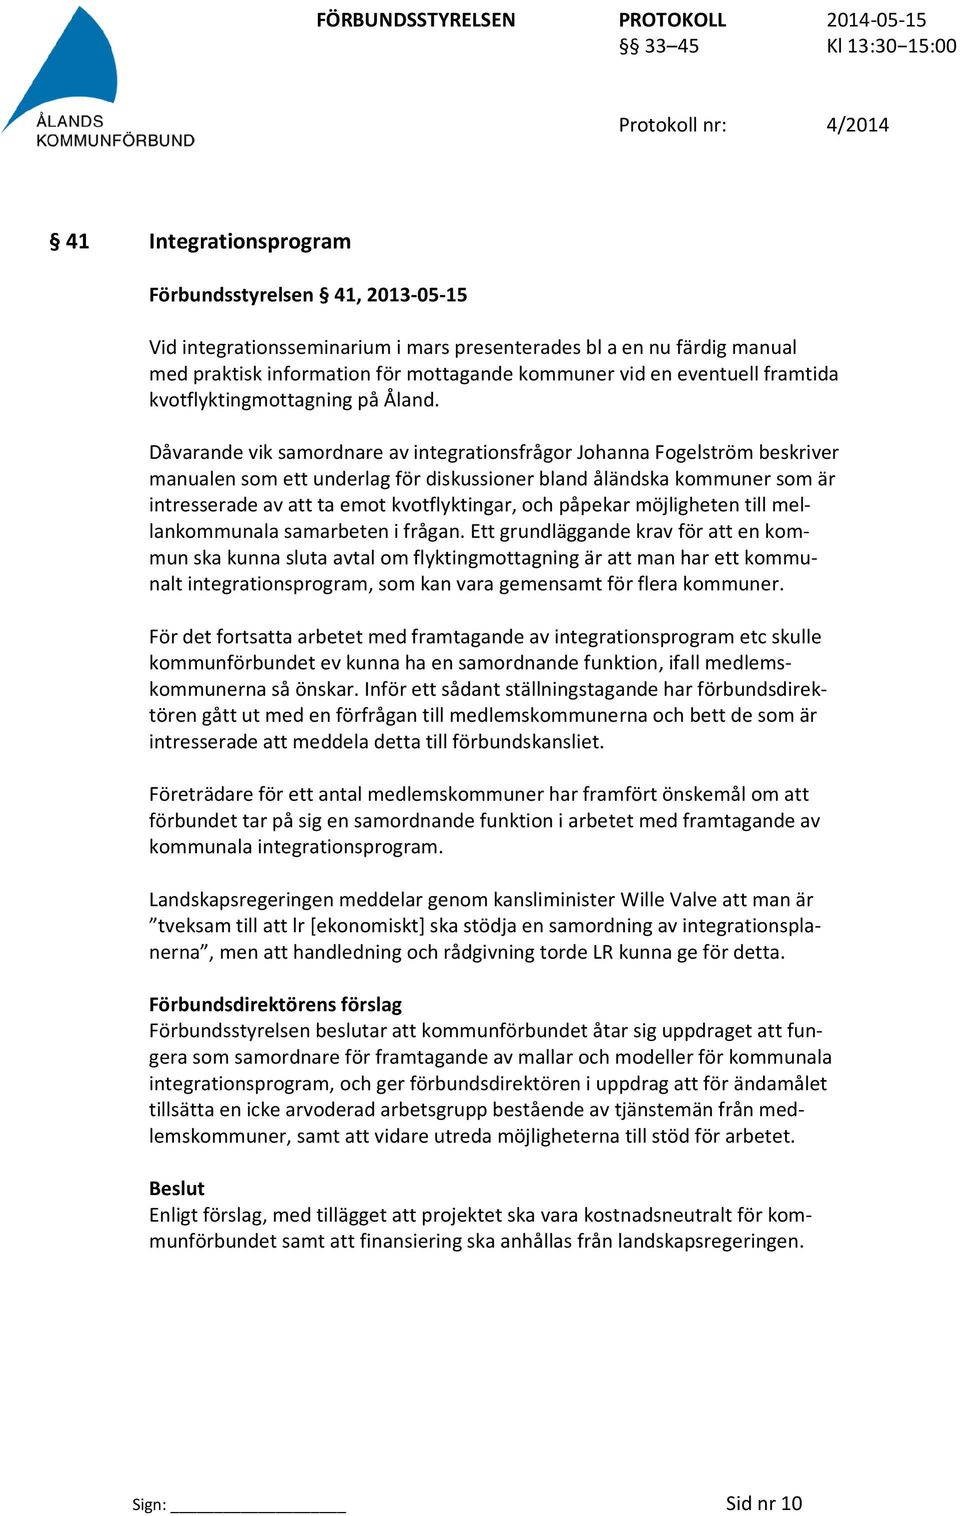 Dåvarande vik samordnare av integrationsfrågor Johanna Fogelström beskriver manualen som ett underlag för diskussioner bland åländska kommuner som är intresserade av att ta emot kvotflyktingar, och